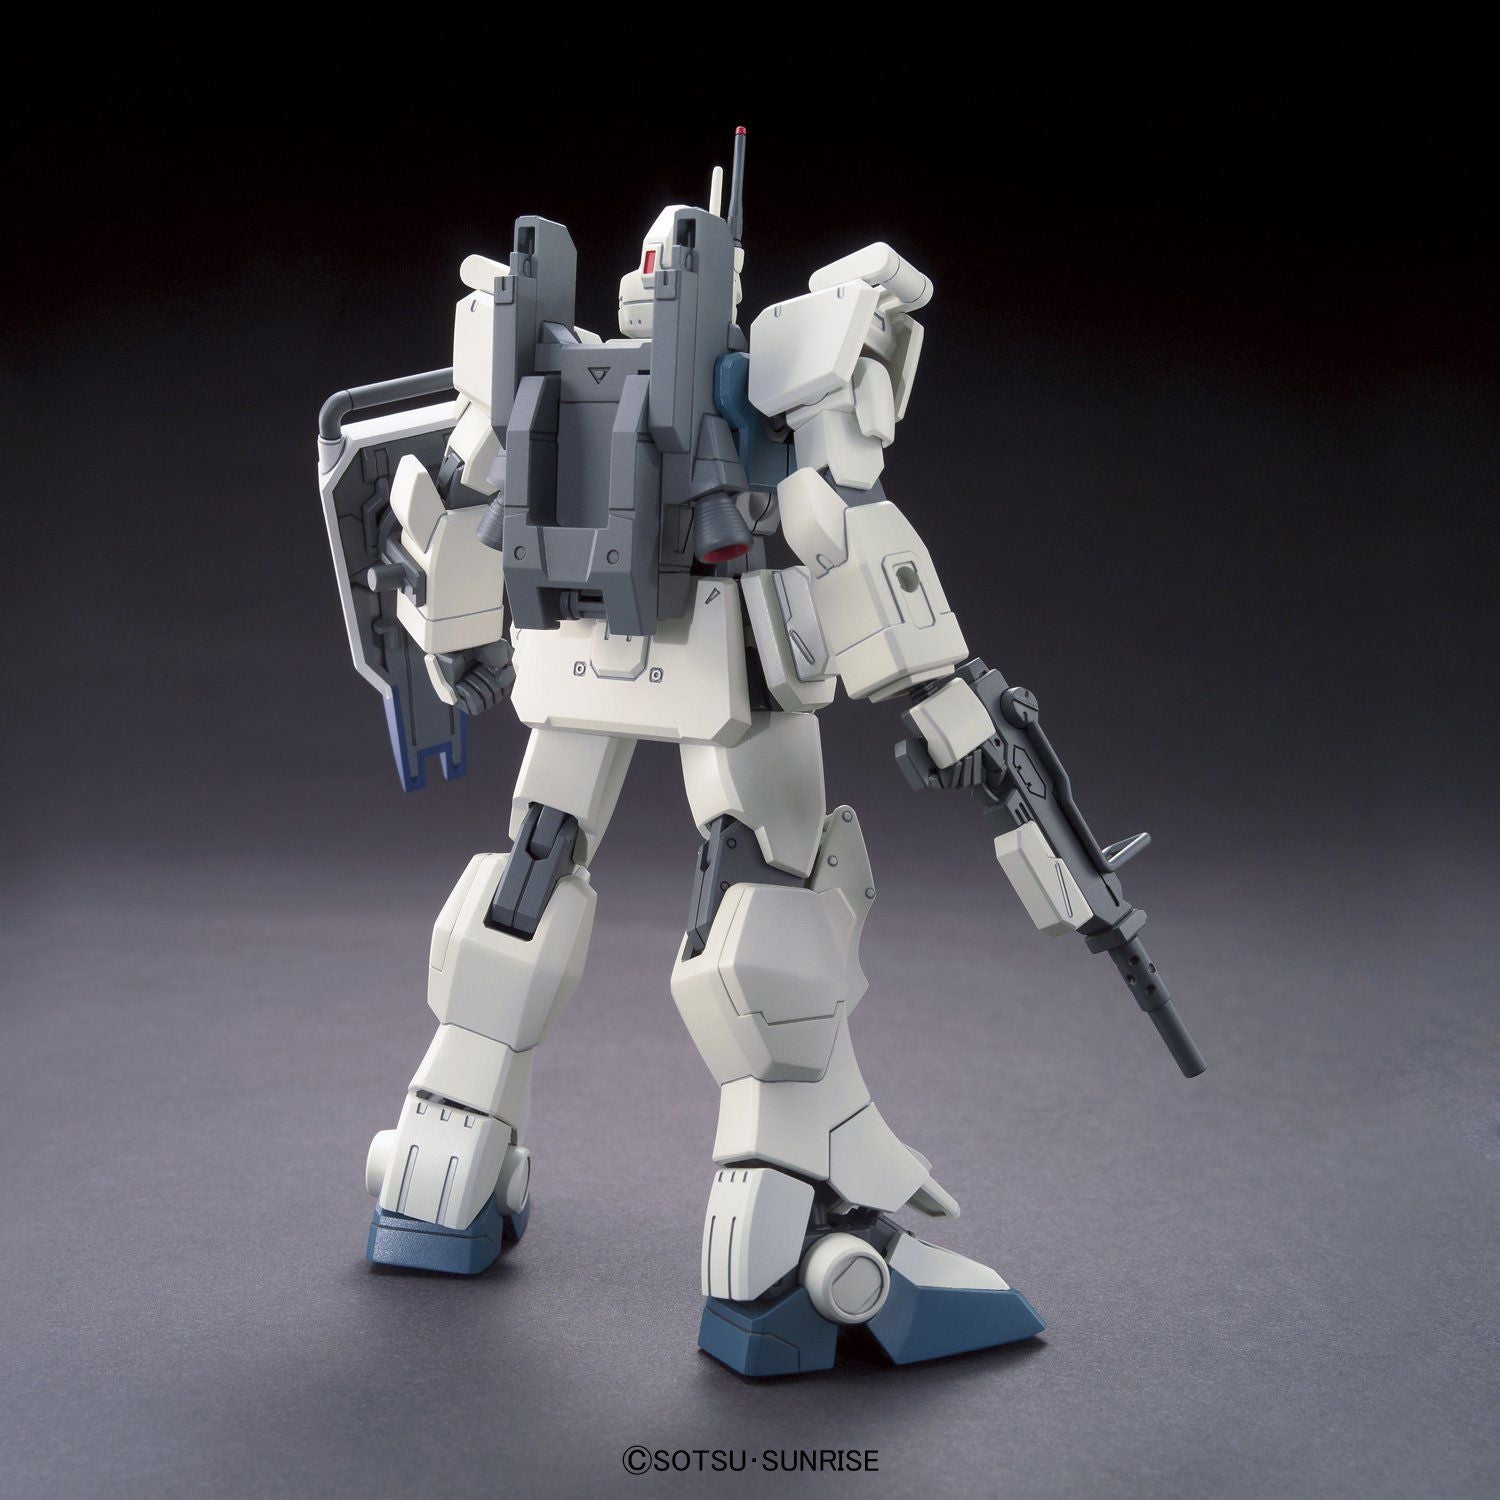 HGUC 1/144 Gundam Ez8